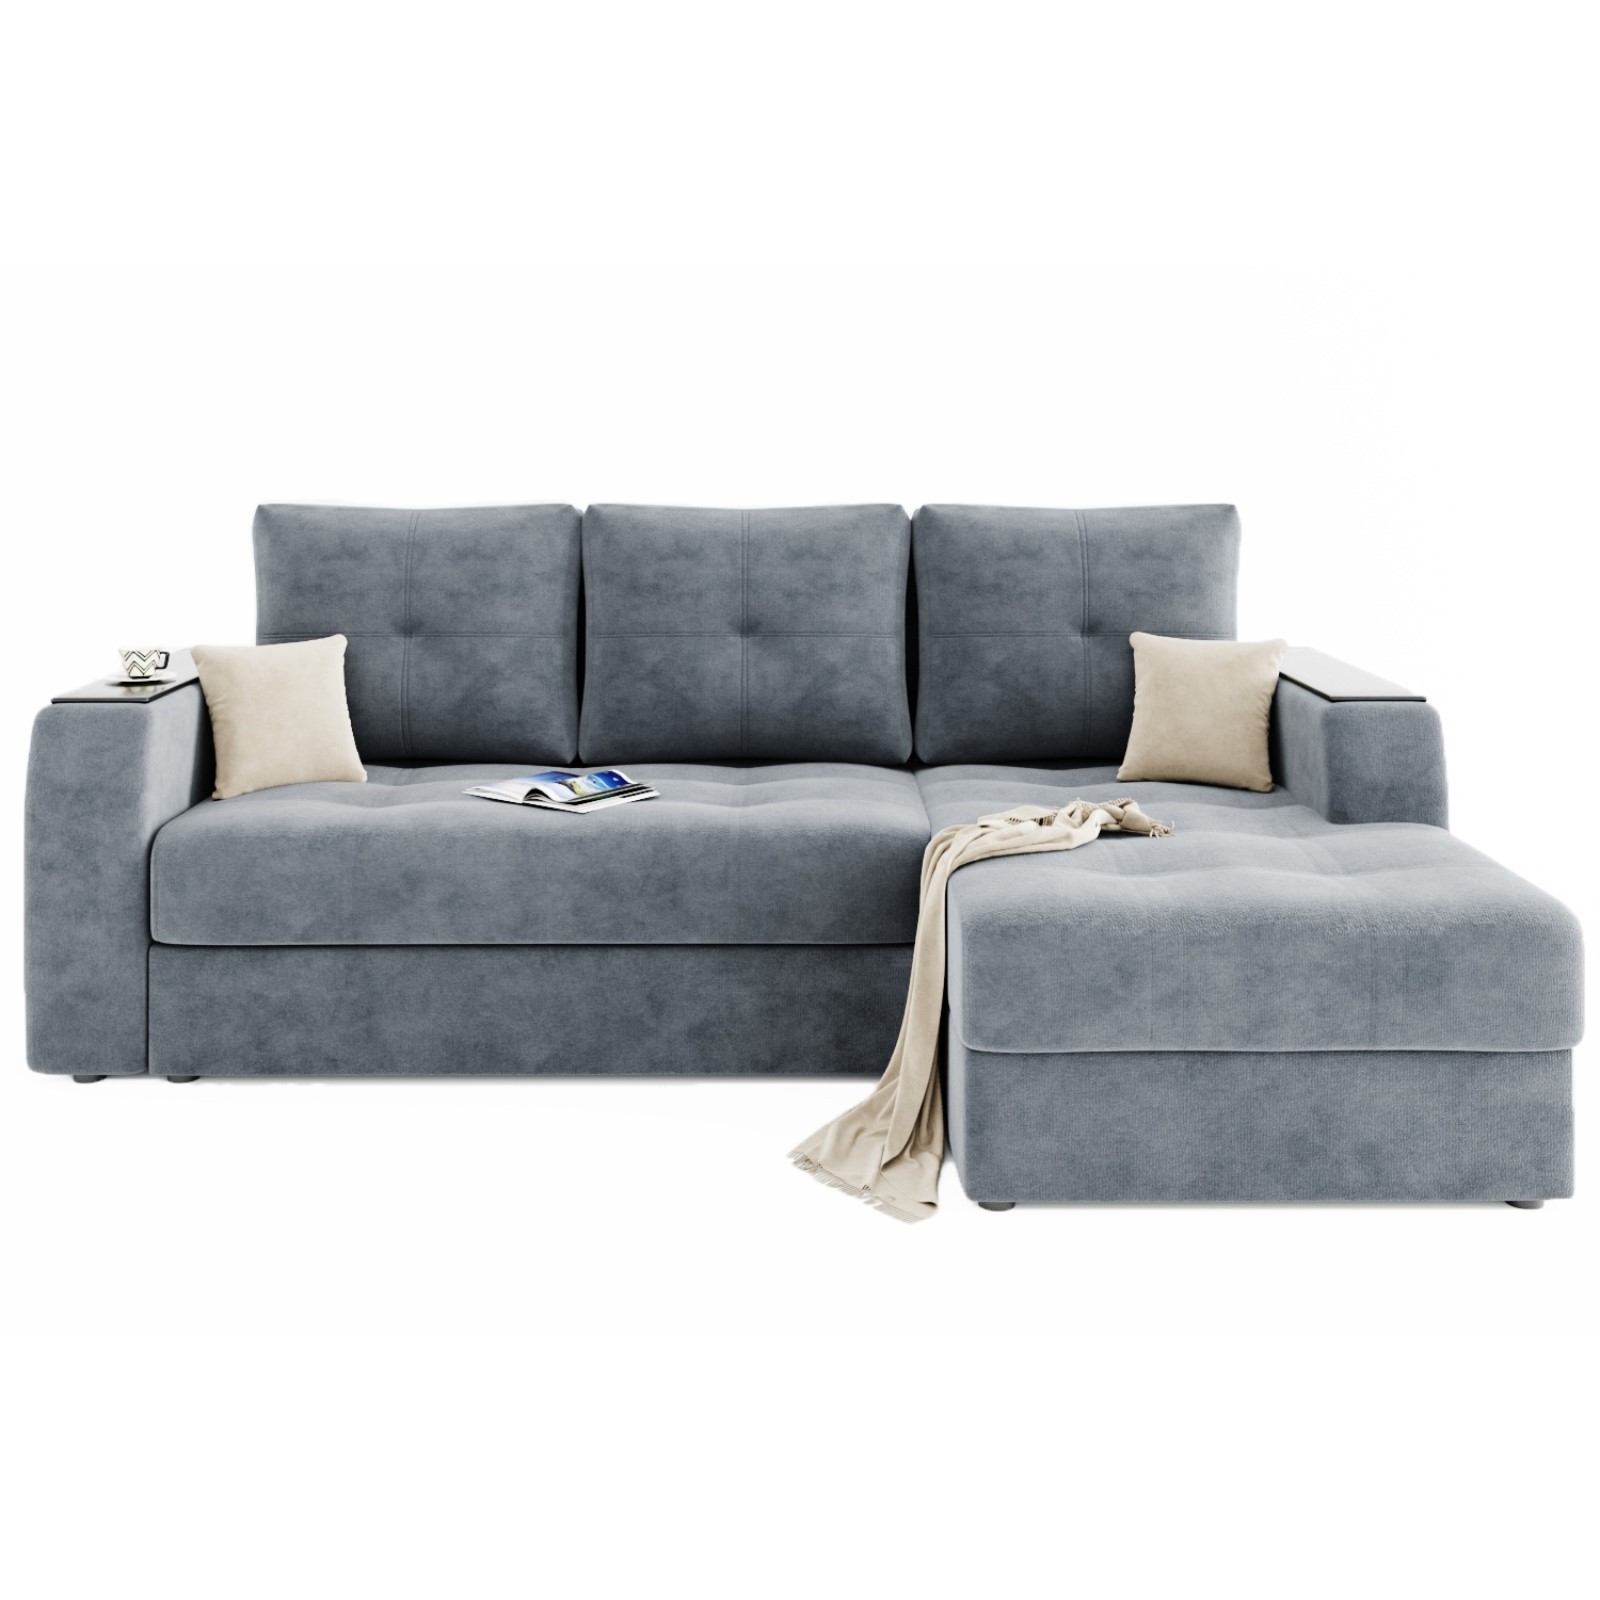 Угловой диван «Сенатор 3», механизм пантограф, угол правый, велюр, селфи 15/ селфи 01 (7908163) - Купить по цене от 66 650.00 руб.